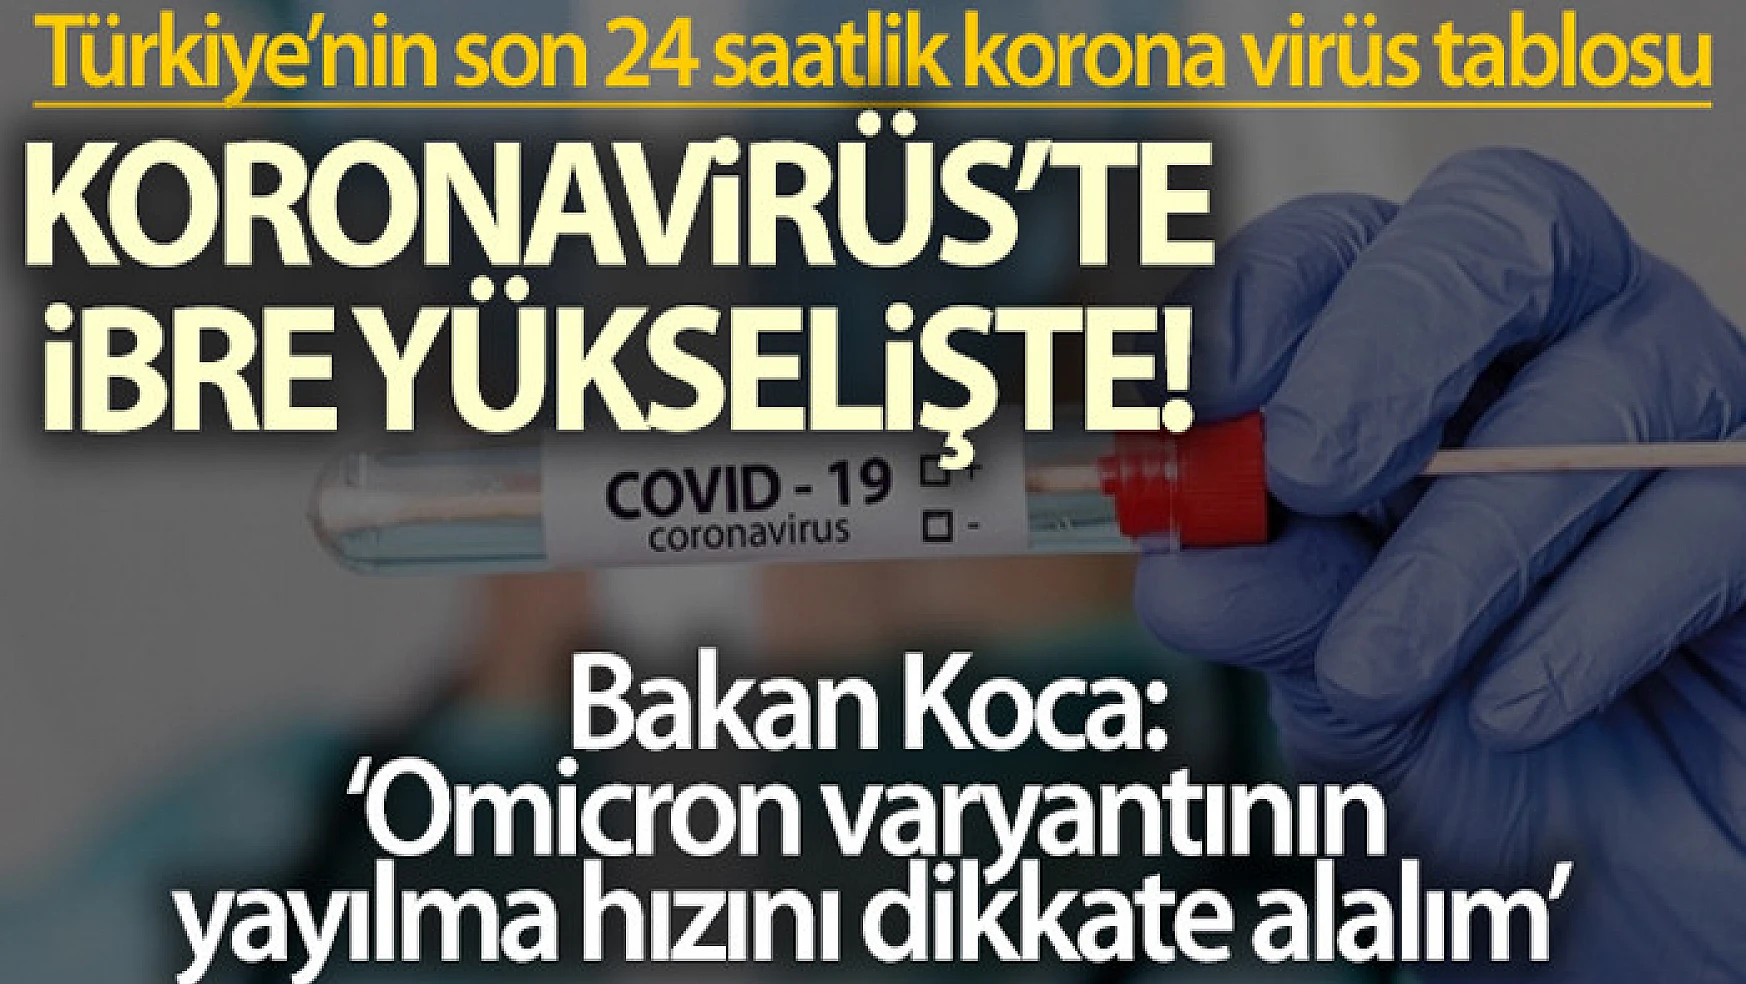 Son 24 saatte korona virüsten 181 kişi hayatını kaybetti